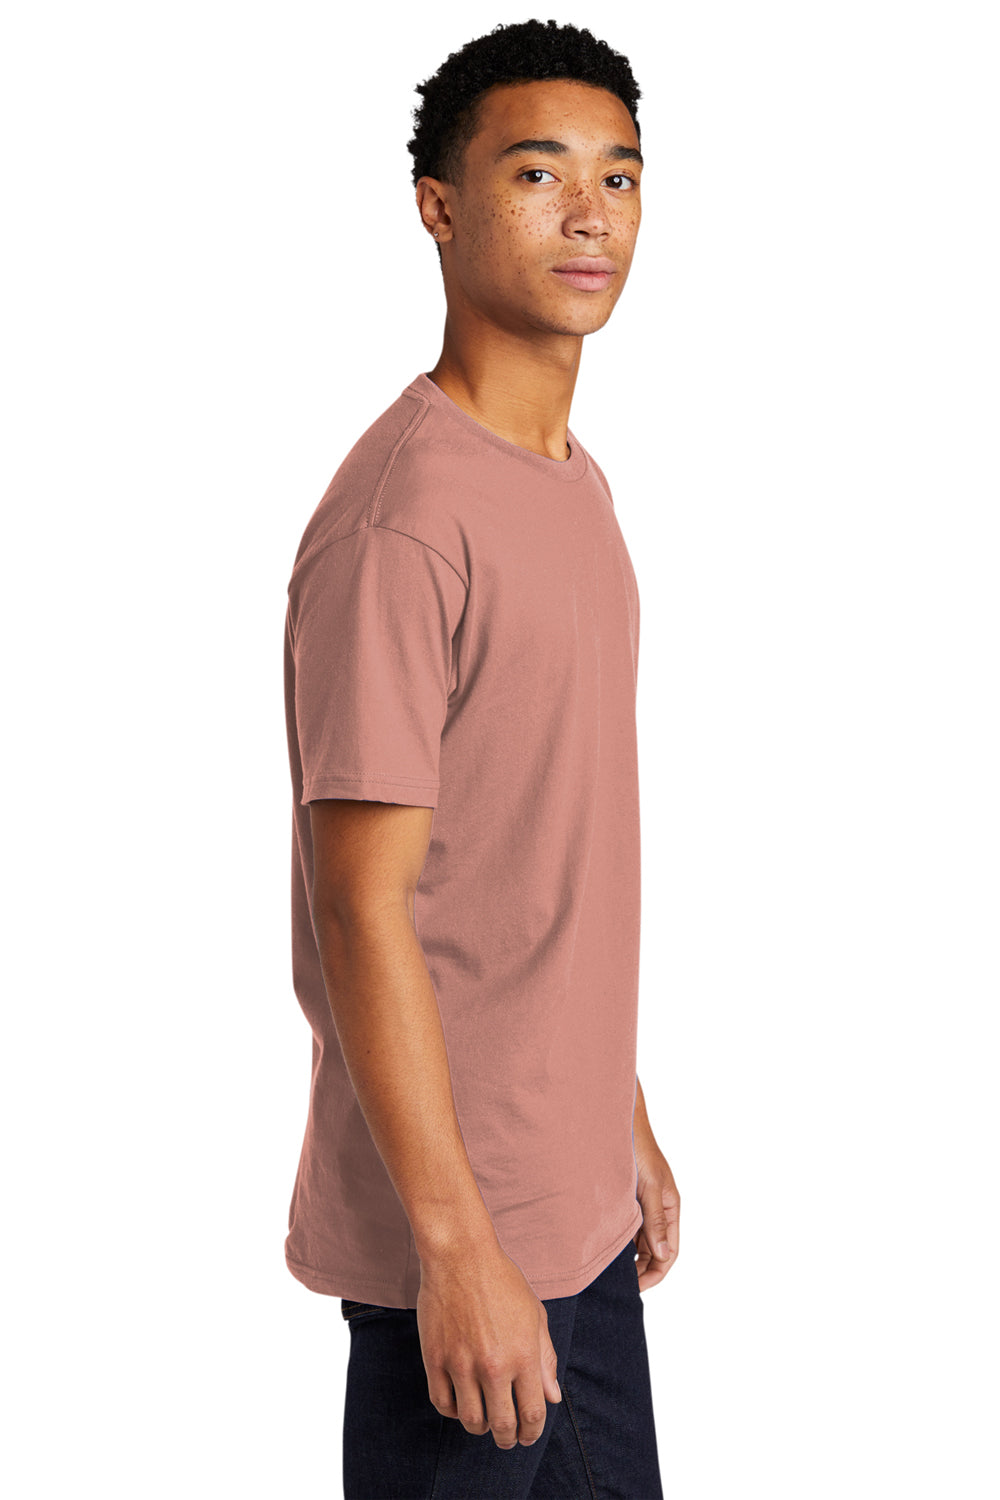 Next Level NL3600/3600 Mens Fine Jersey Short Sleeve Crewneck T-Shirt Desert Pink Side